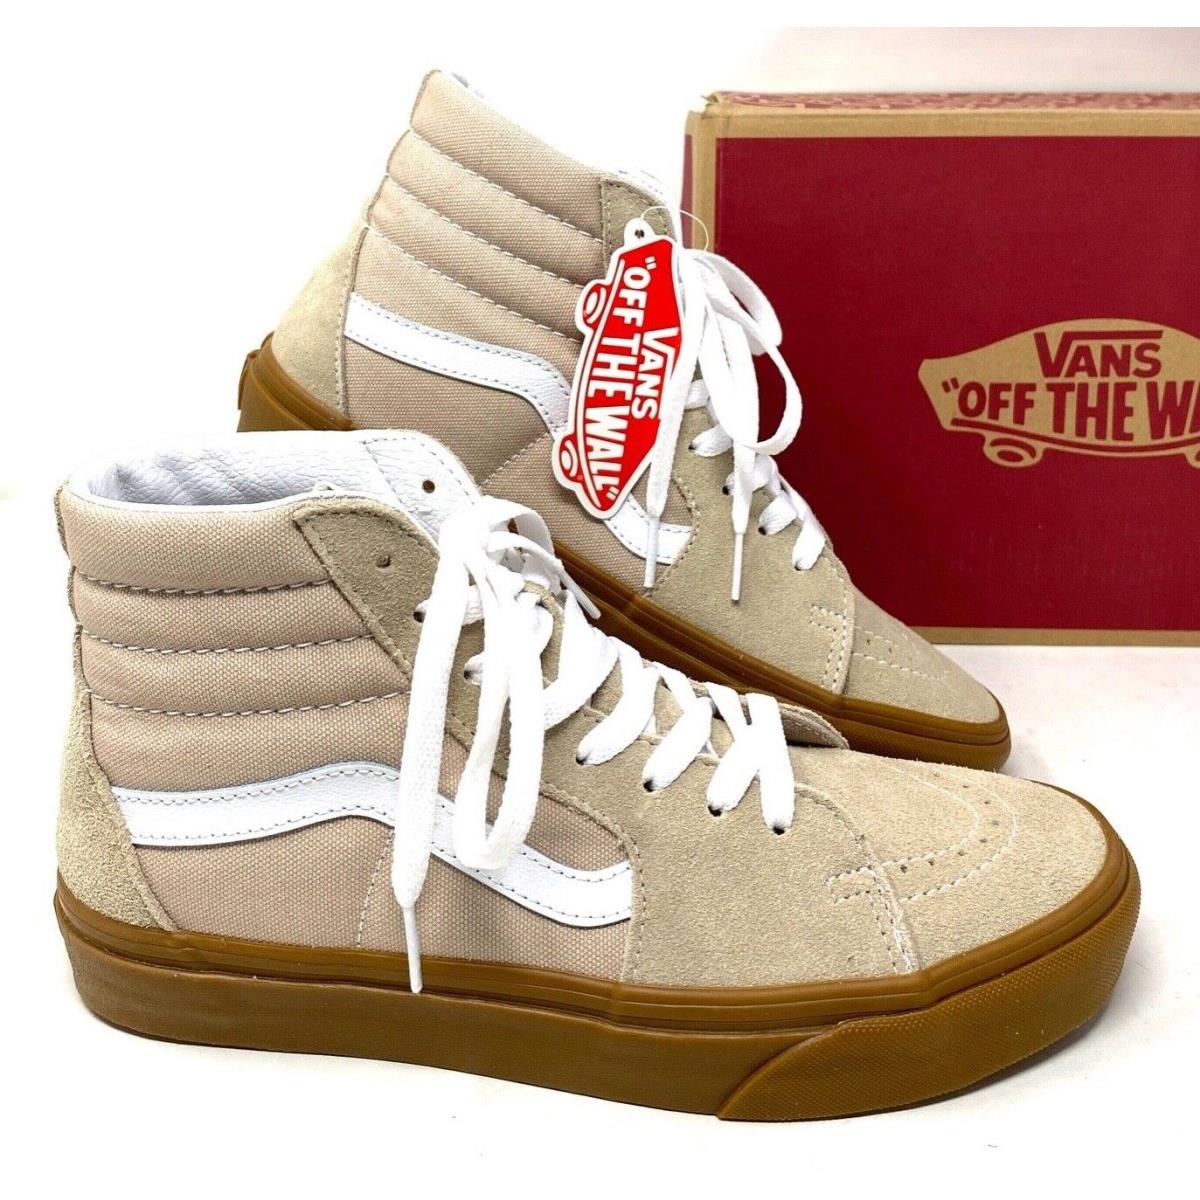 Vans Sk8-Hi Women Shoes Humus Gum Casual Suede Canvas Sneakers Skate VN0A38GEVS8